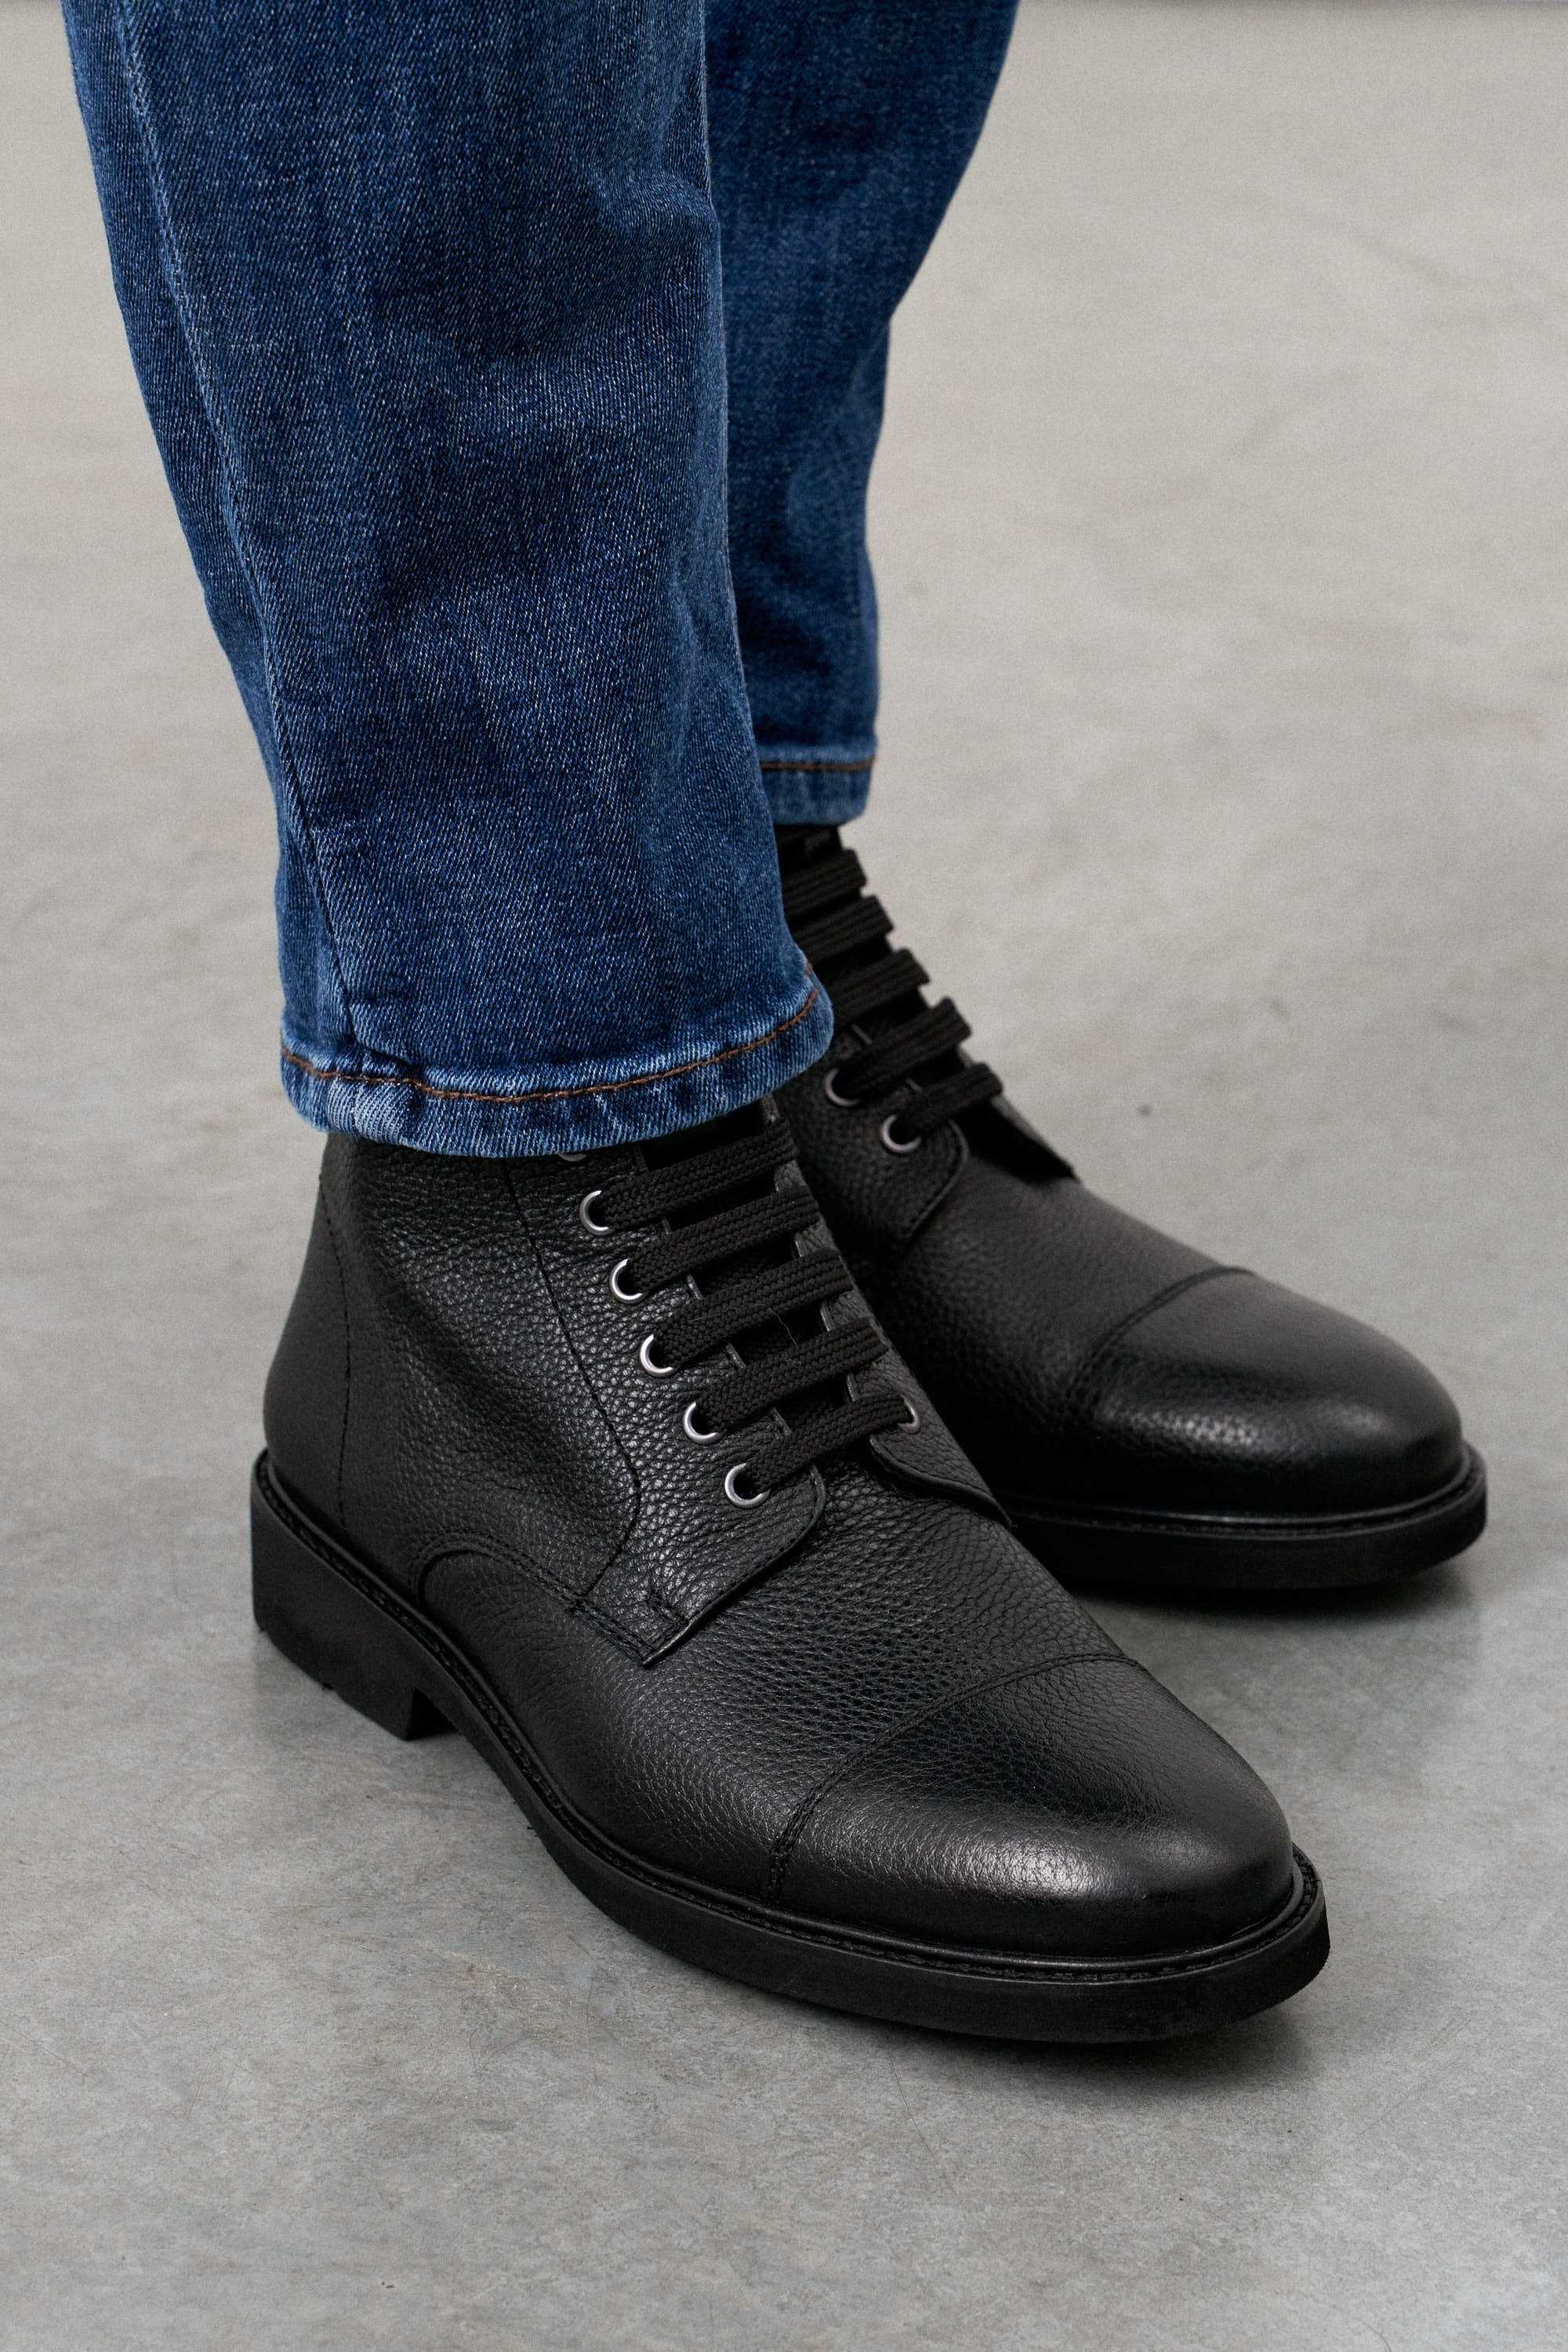 Ботинки мужские дерби черные на шнурках и замке, с отрезным мысом